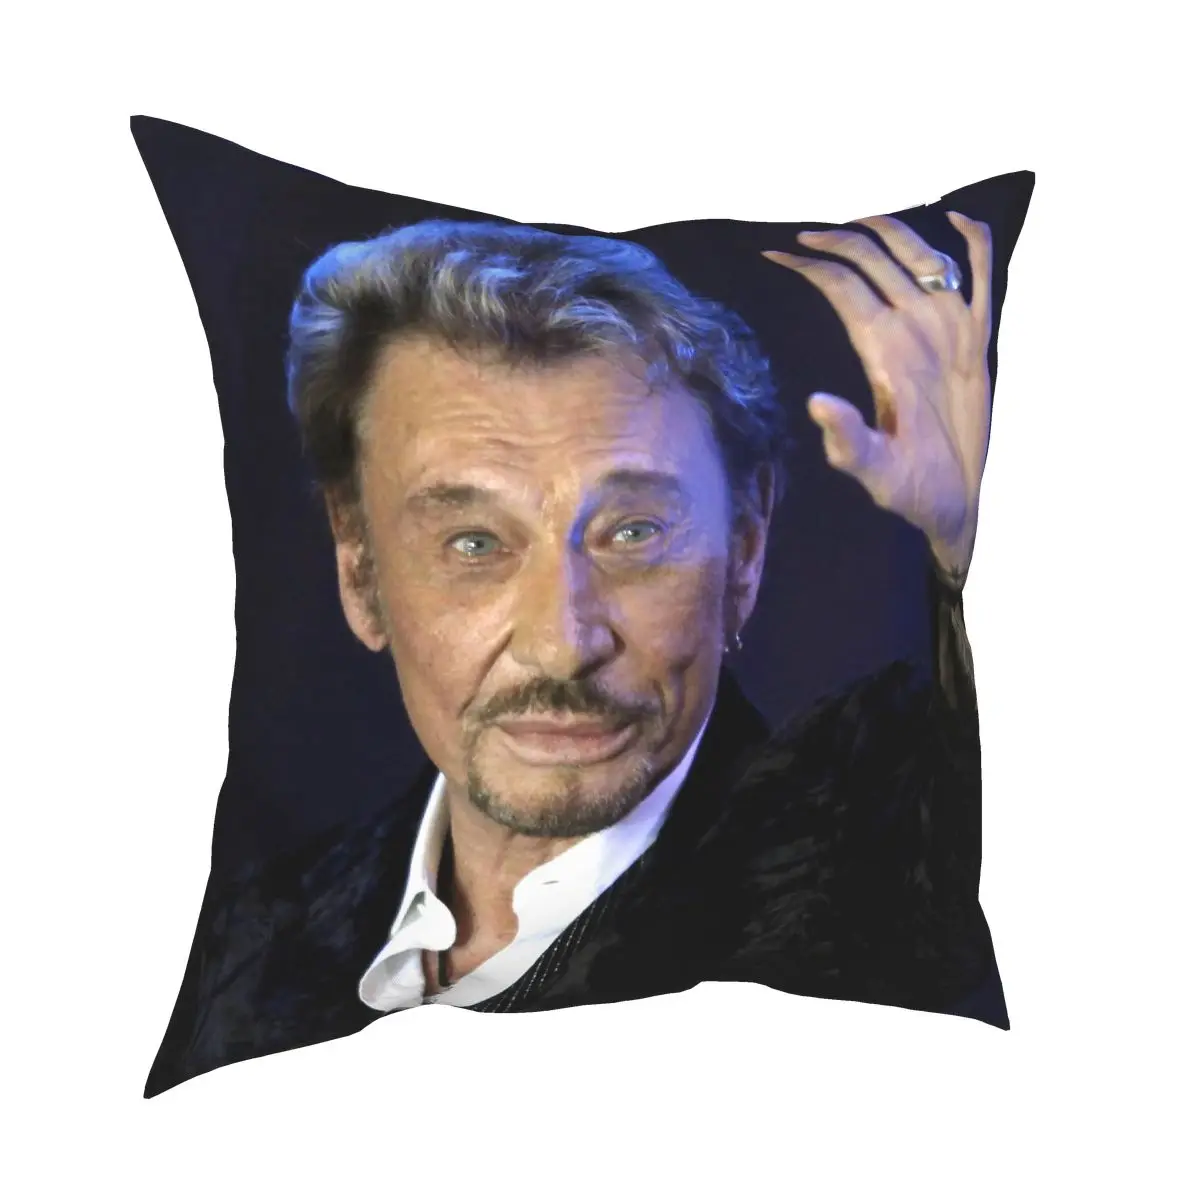 

Джонни Холлидей наволочка для подушки, декоративная французский рок-певец чехол для подушки для дивана двухсторонняя Полиэстеровая печать